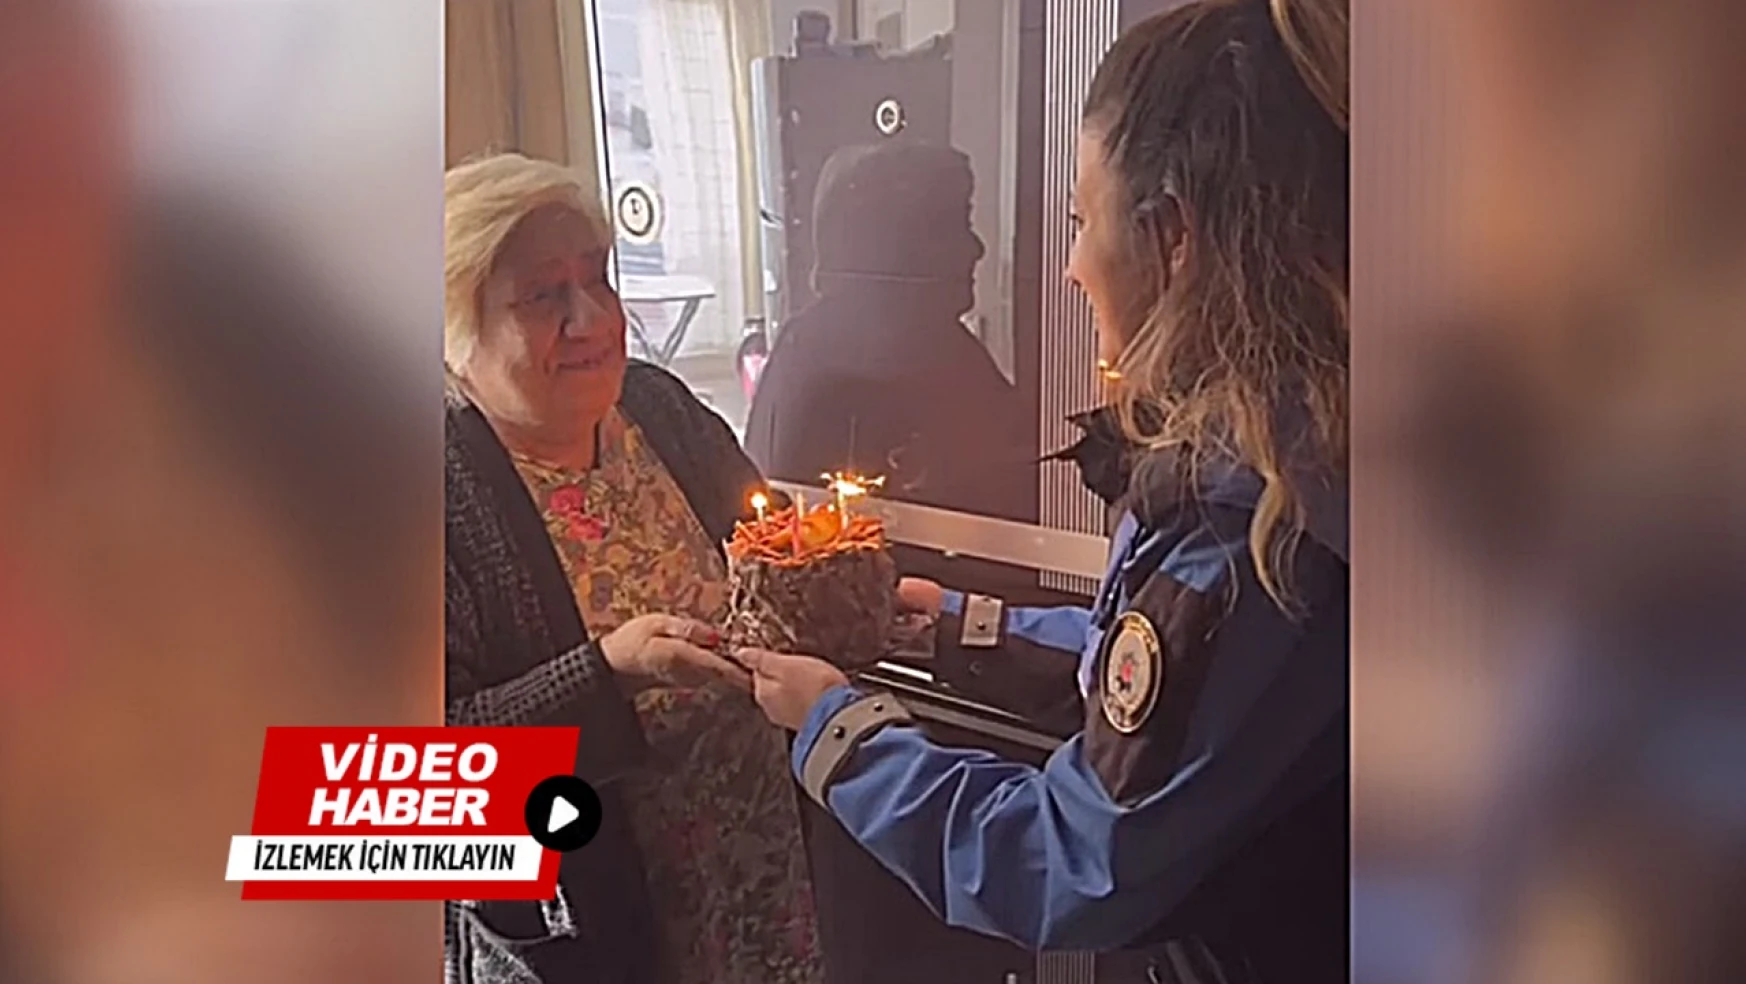 112 Acil Çağrı Merkezinden bayrak isteyen yaşlı kadına polisten pastalı sürpriz